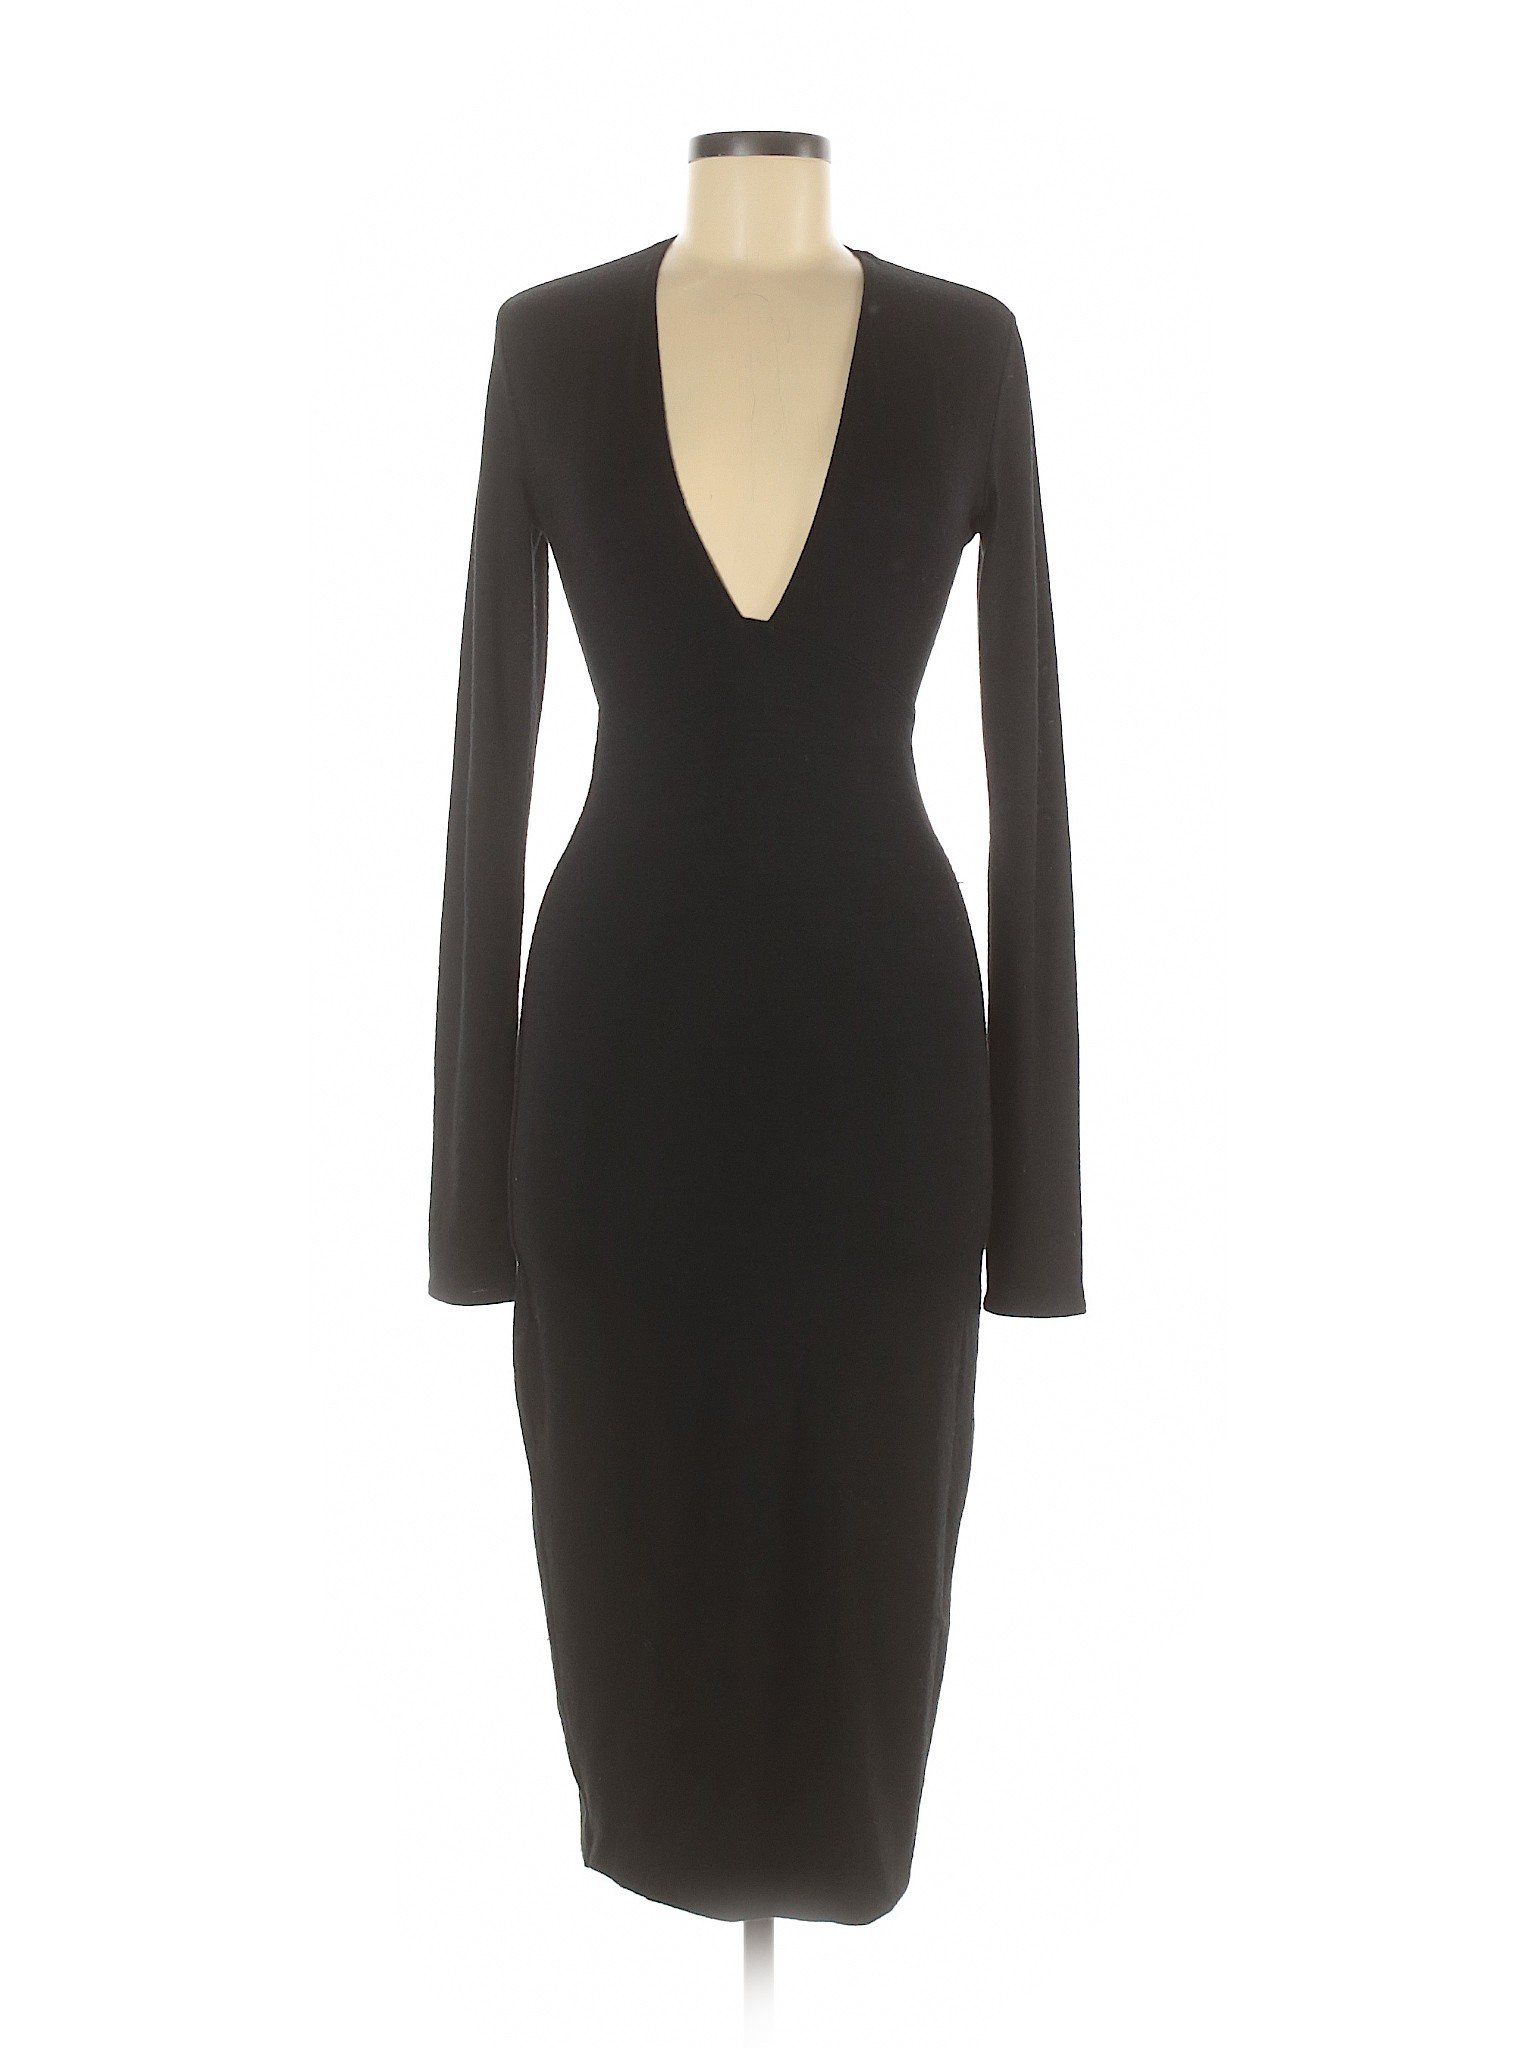 Wilfred Free Women Black Casual Dress S | eBay